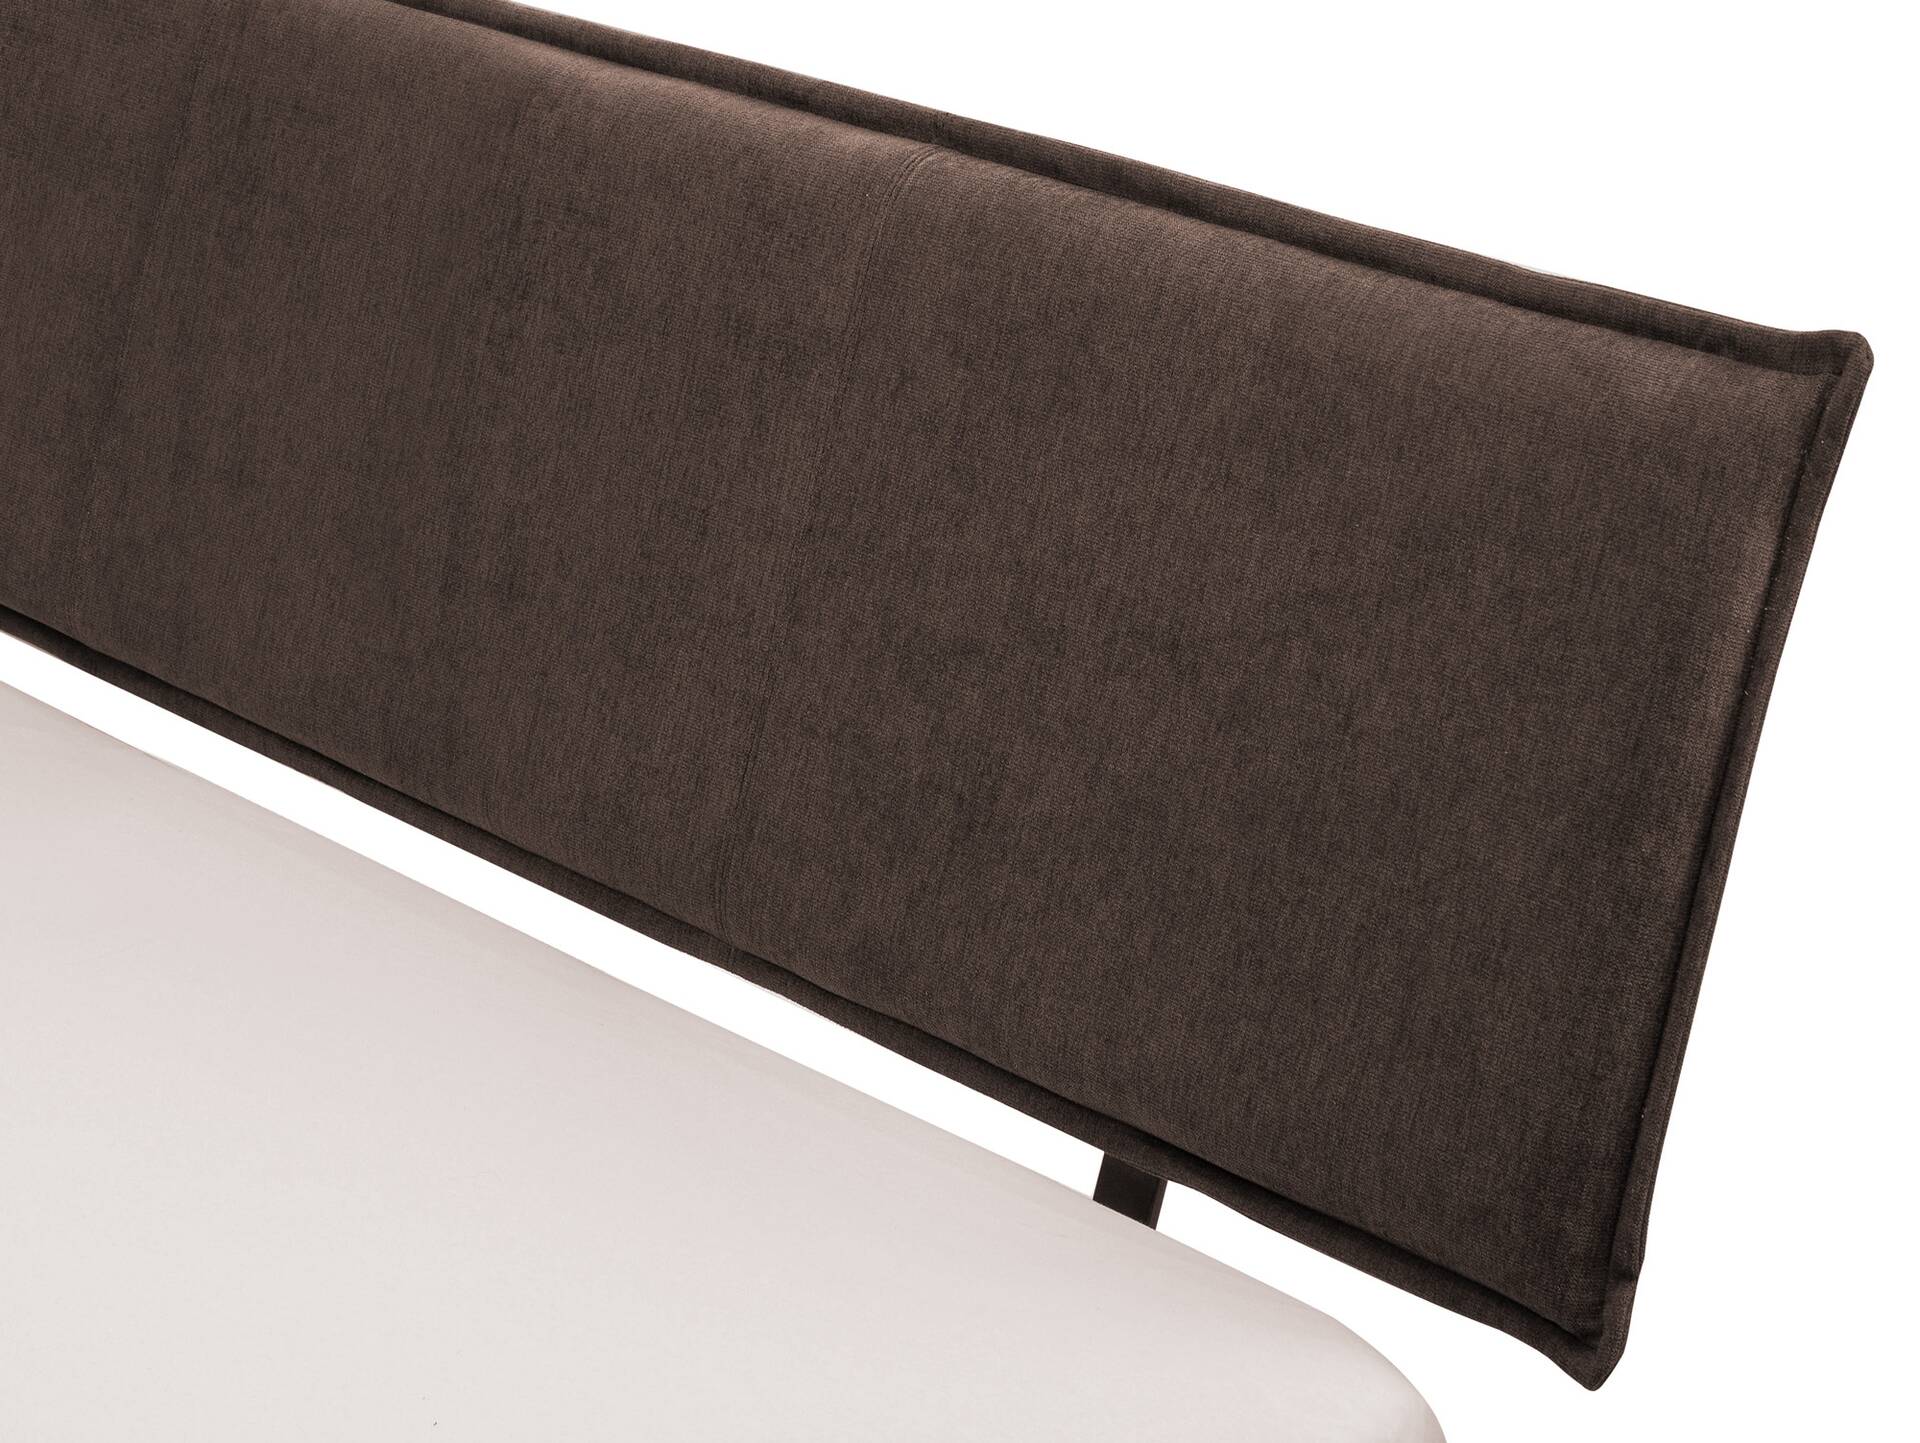 CORDINO 4-Fuß-Bett aus Eiche mit Polster-Kopfteil, Material Massivholz 140 x 220 cm | Eiche lackiert | Stoff Braun | gebürstet